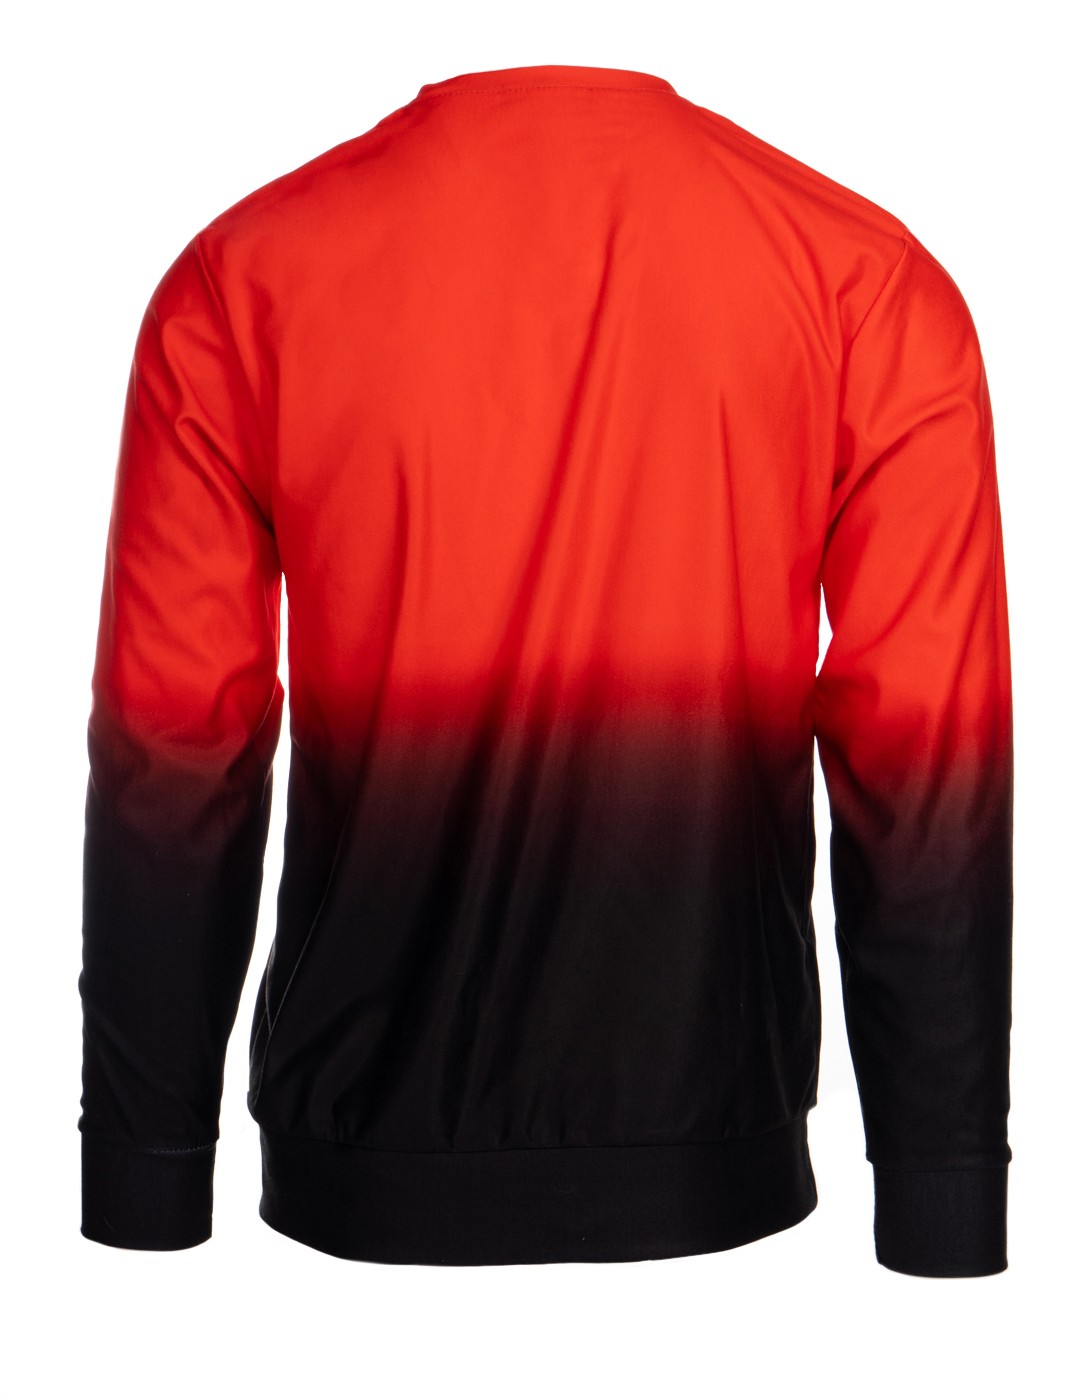 SHADOWS Sweatshirt Black/Red